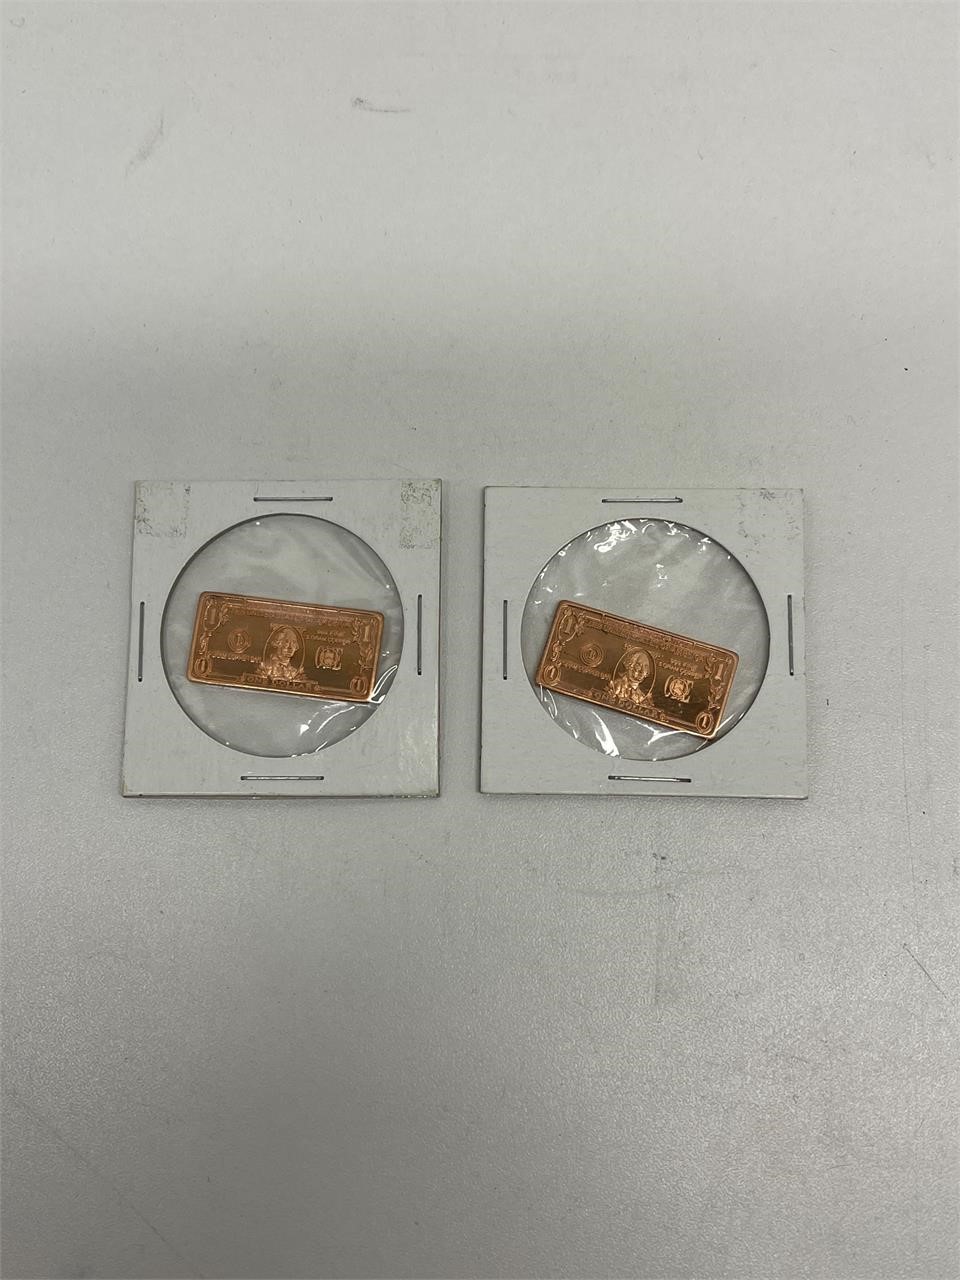 2 US one dollar copper bar